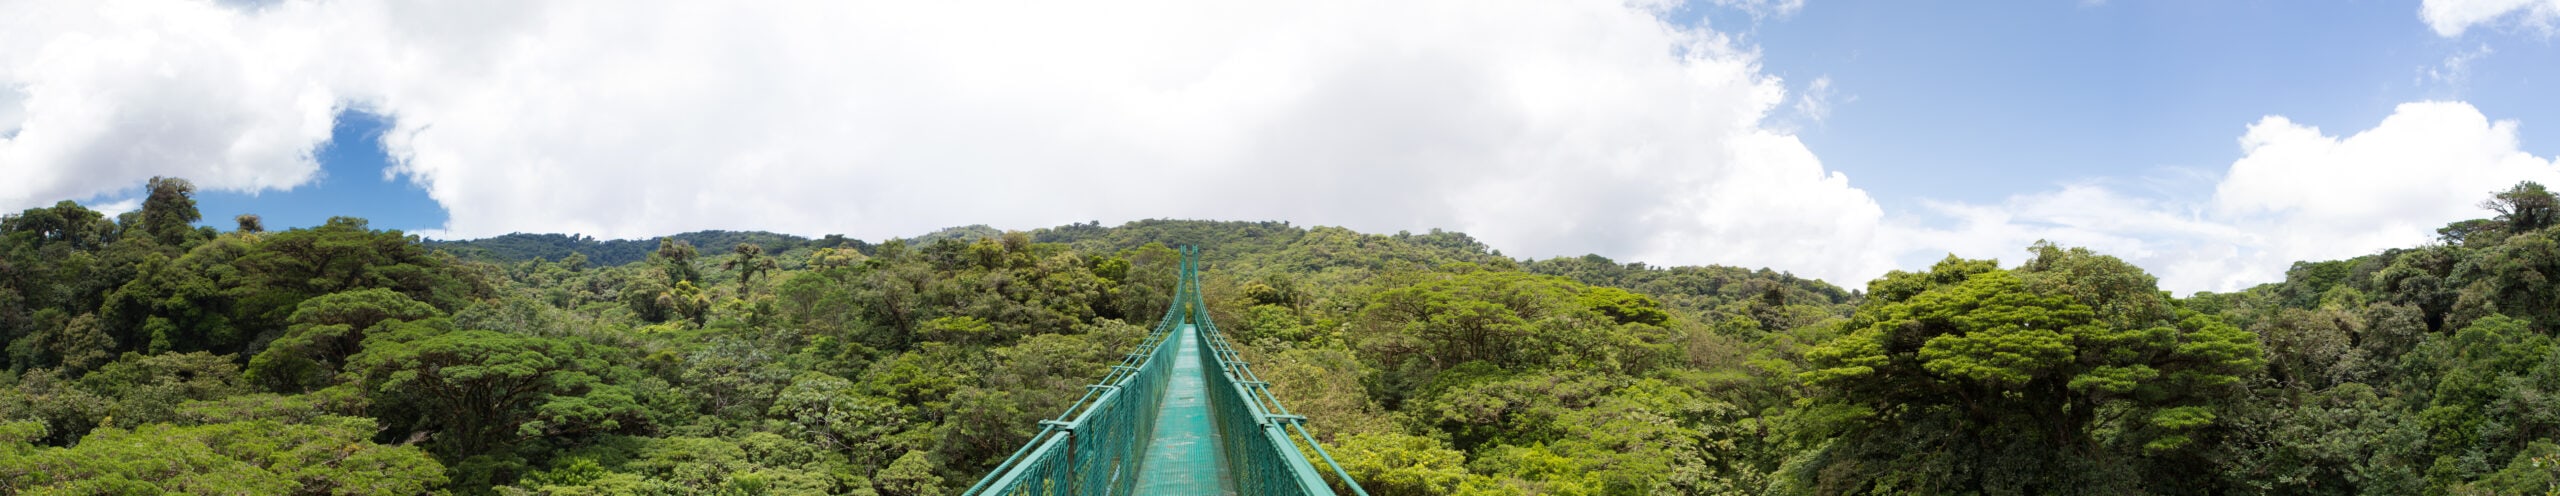 15 Best Hotels In Monteverde Costa Rica